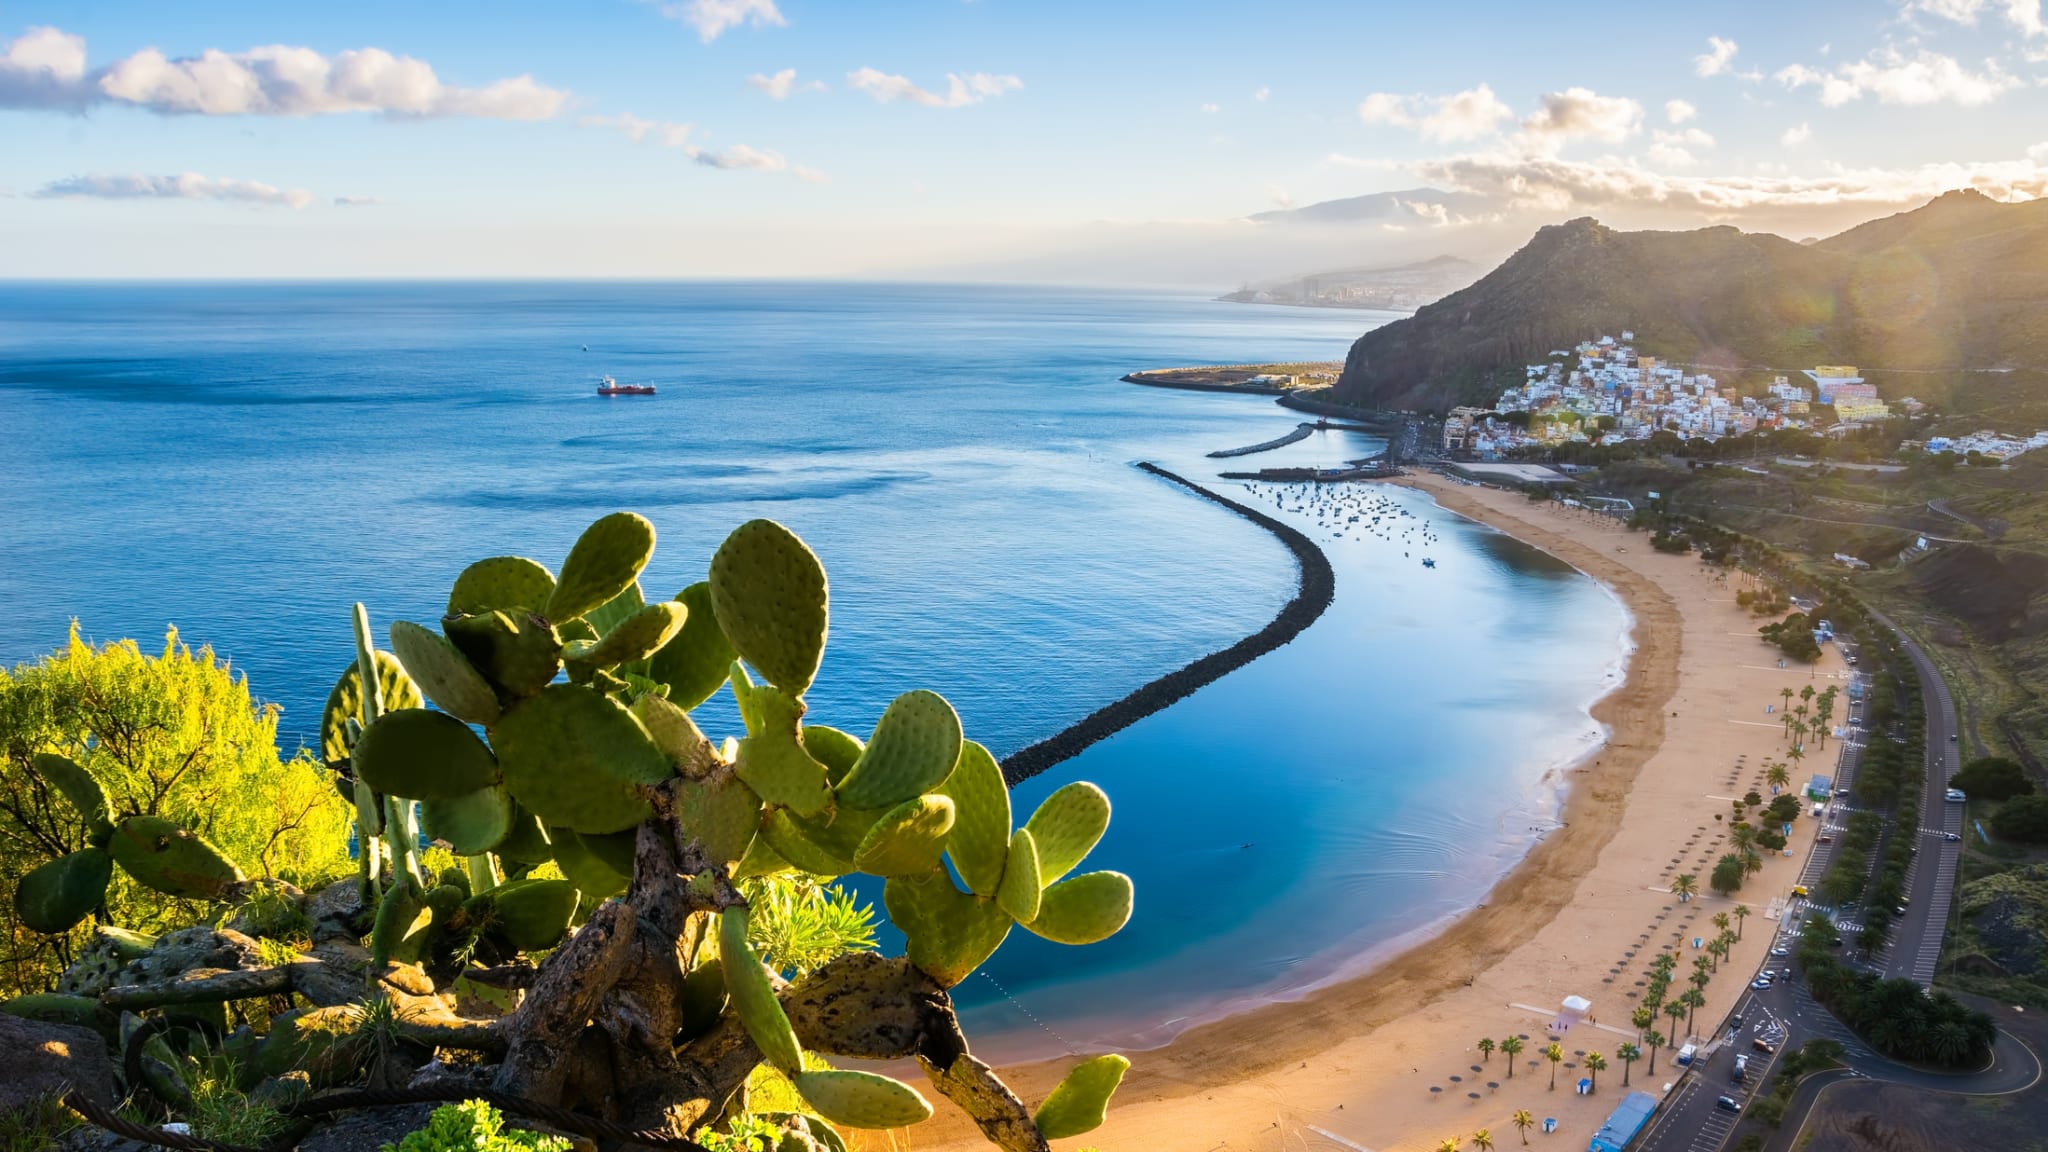 Aussicht auf den Strand las Teresitas in Santa Cruz de Tenerife, Teneriffa, Kanarische Inseln ©iStock.com/Elena-studio